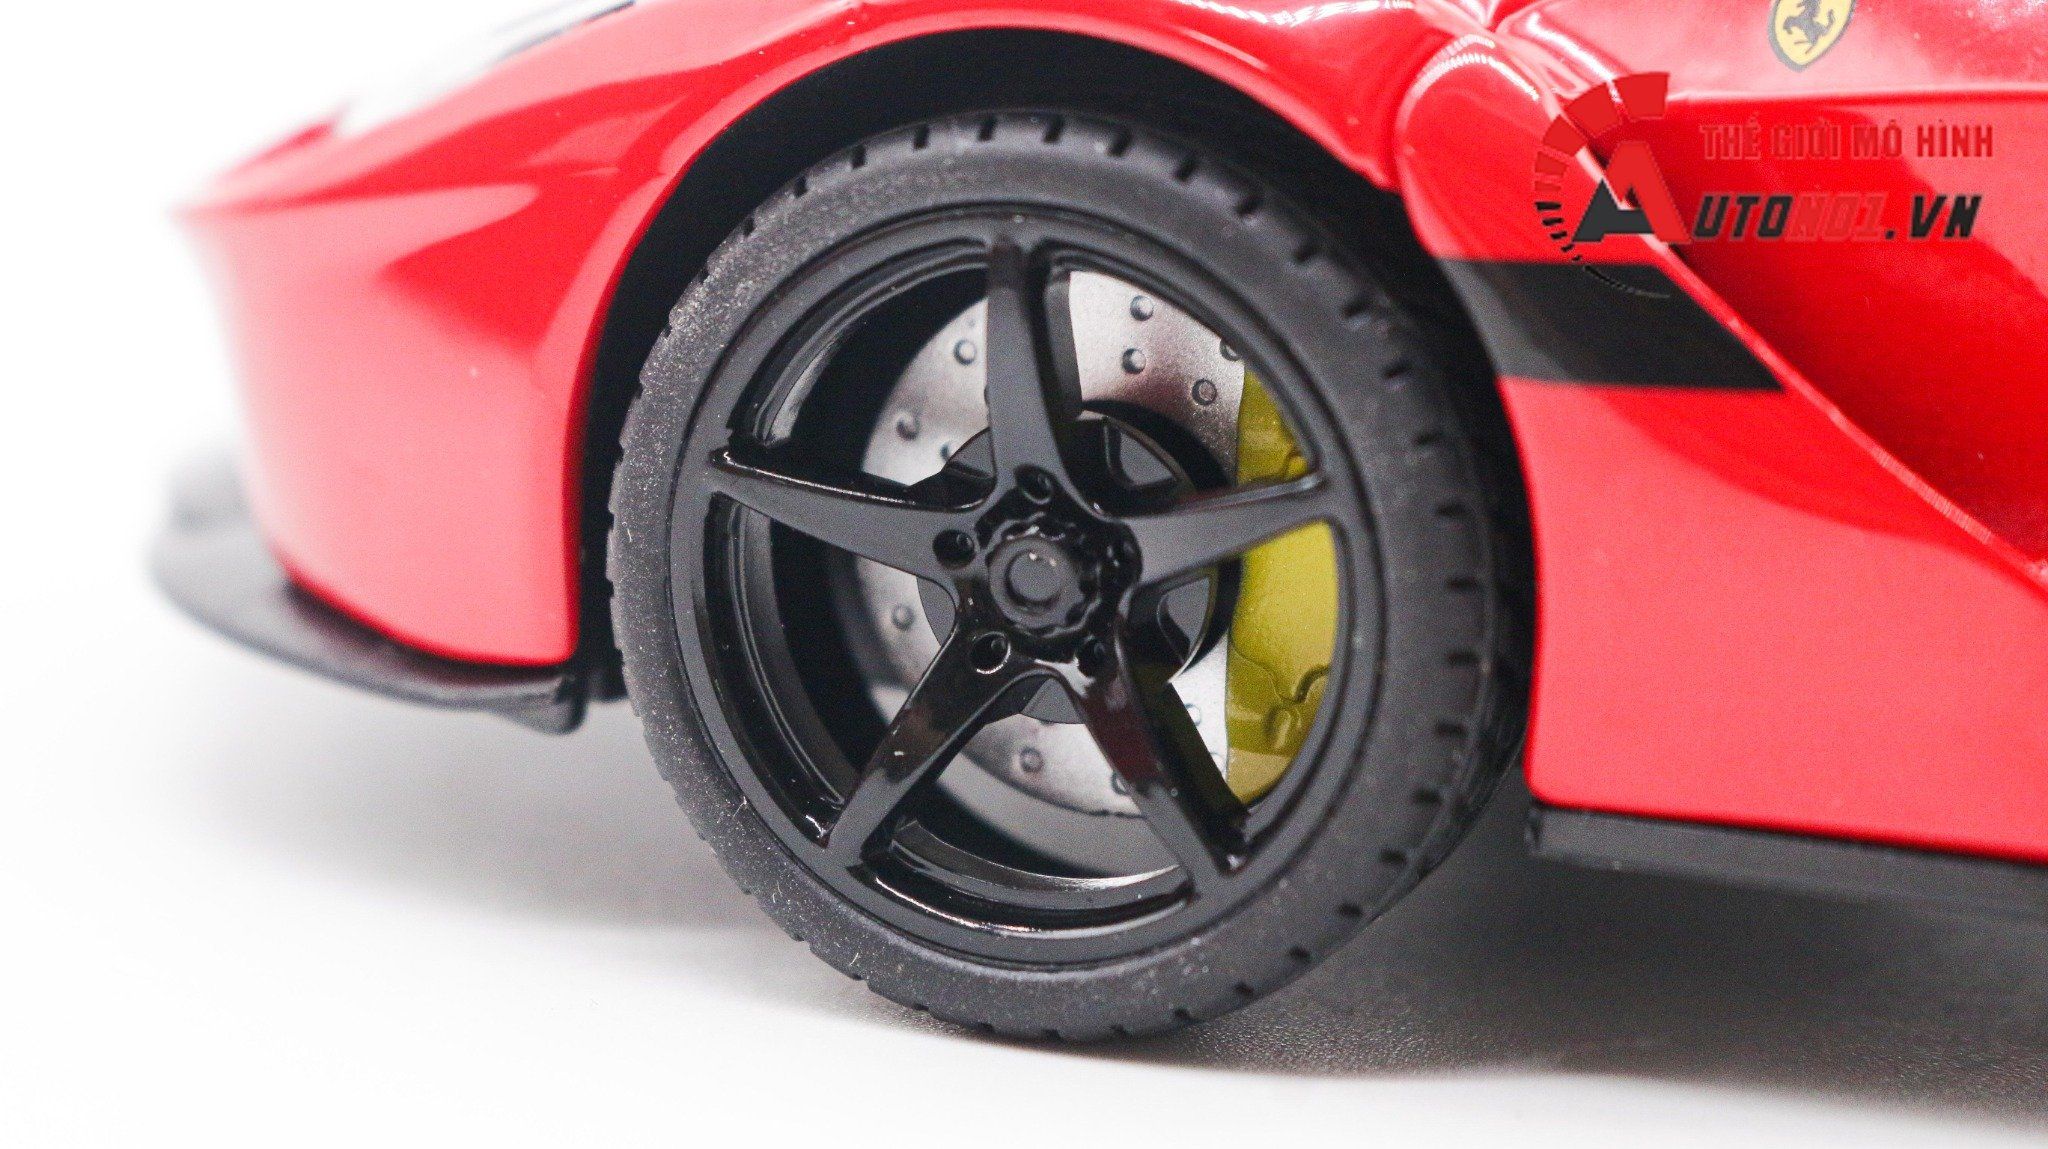  Mô hình xe Ferrari Laferrari Aperta mui trần full open - có âm thanh - có đèn tỉ lệ 1:22 Jiaye Model OT339 